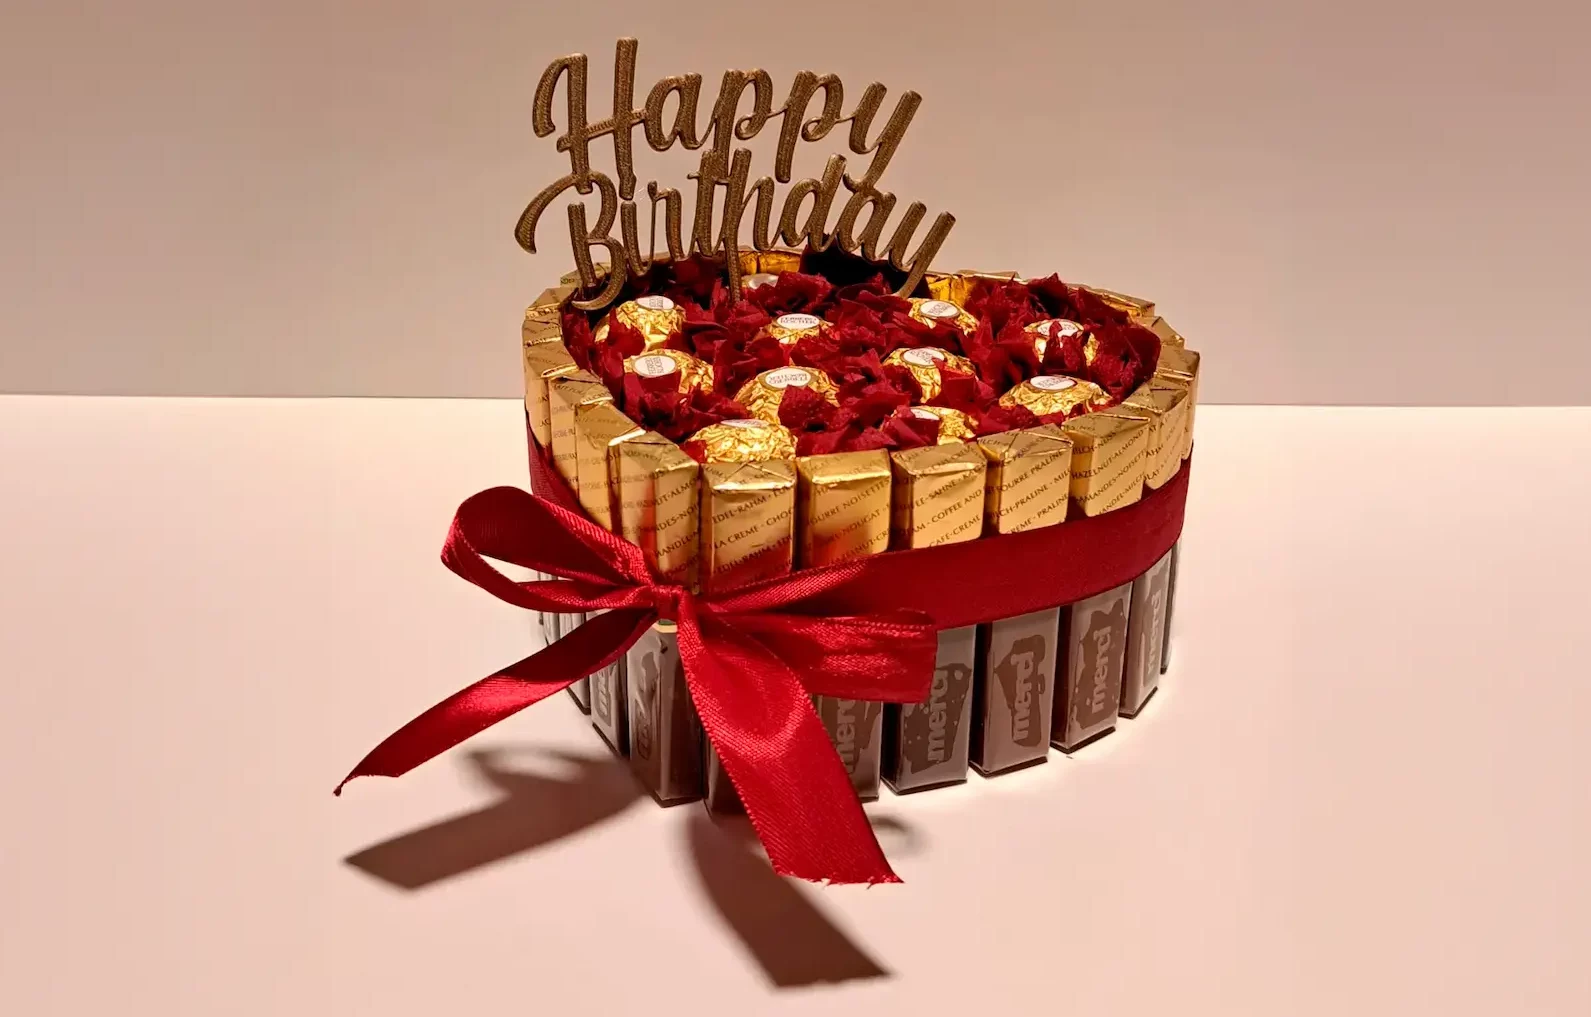 cake happy birthday 1 edited